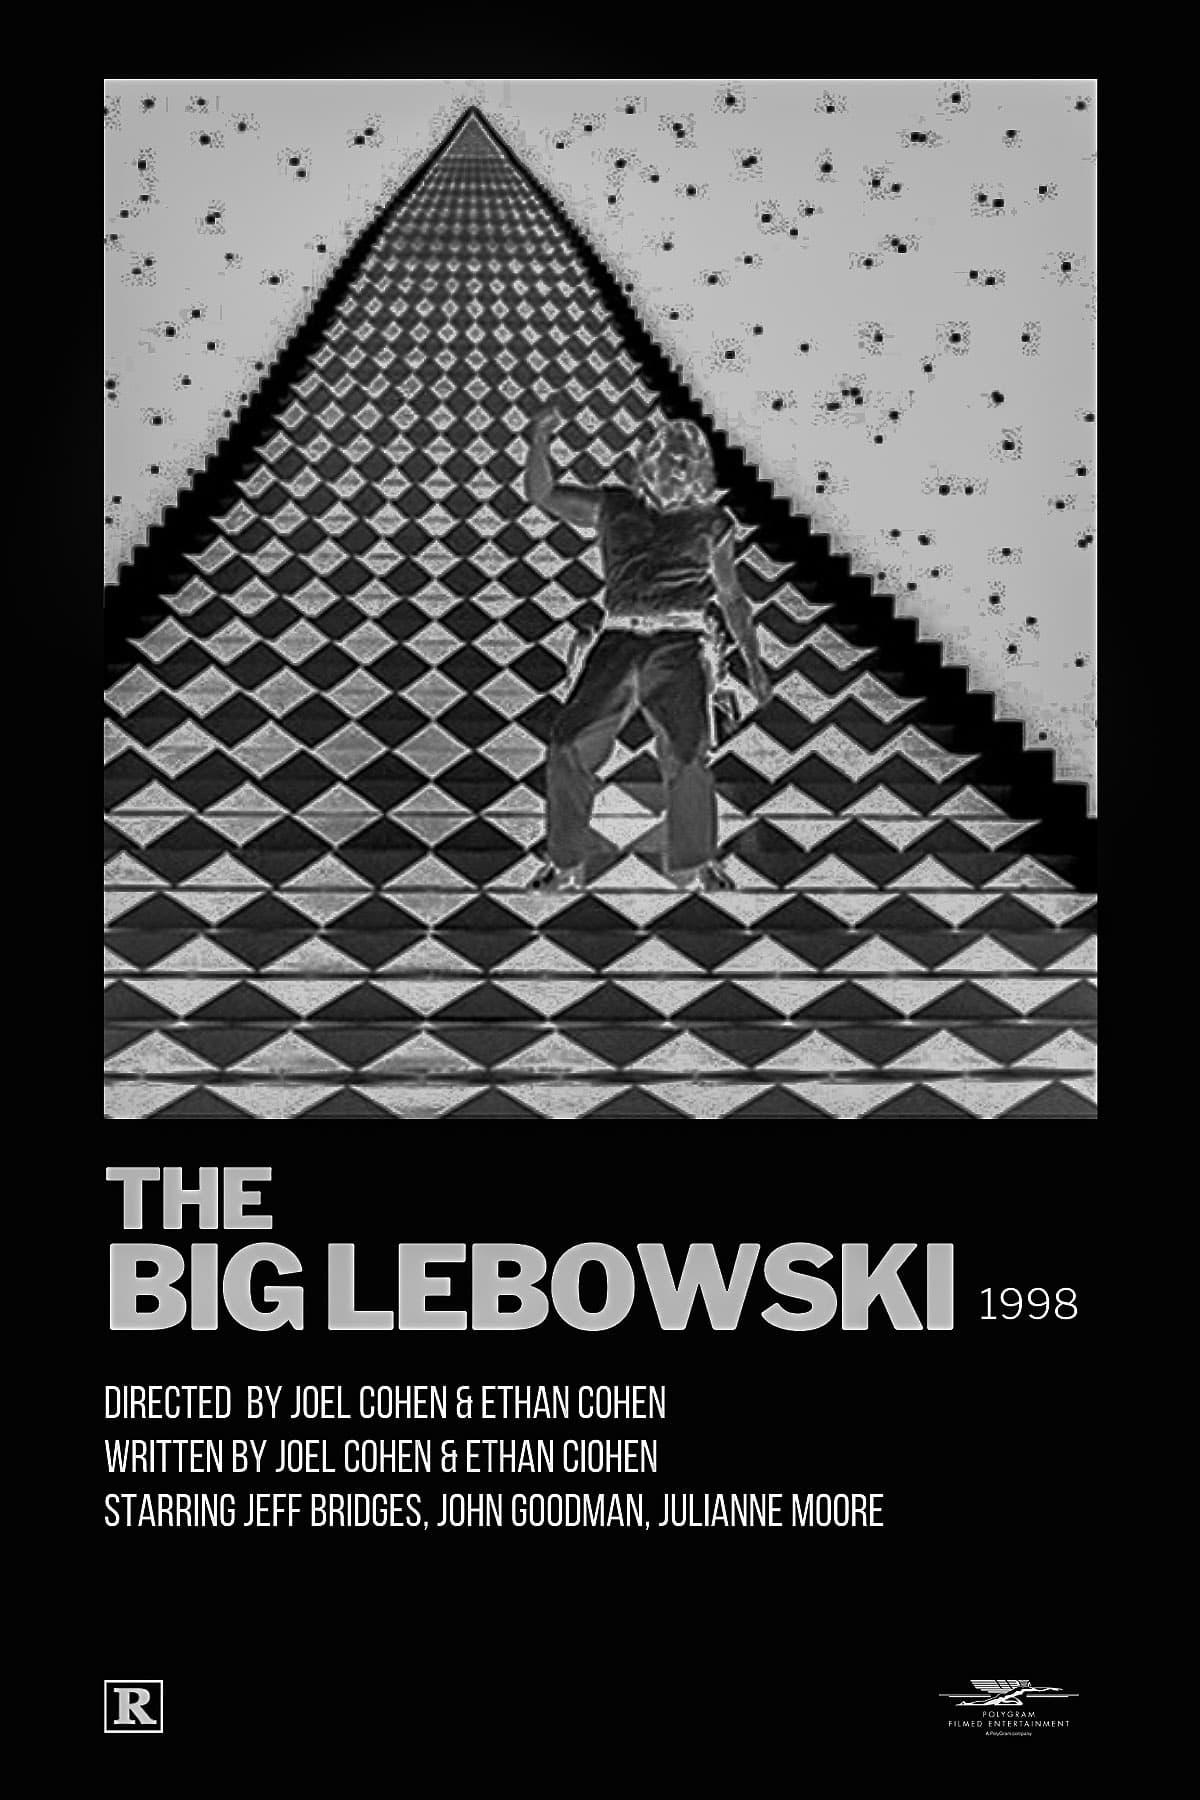 The Big Lebowski poster